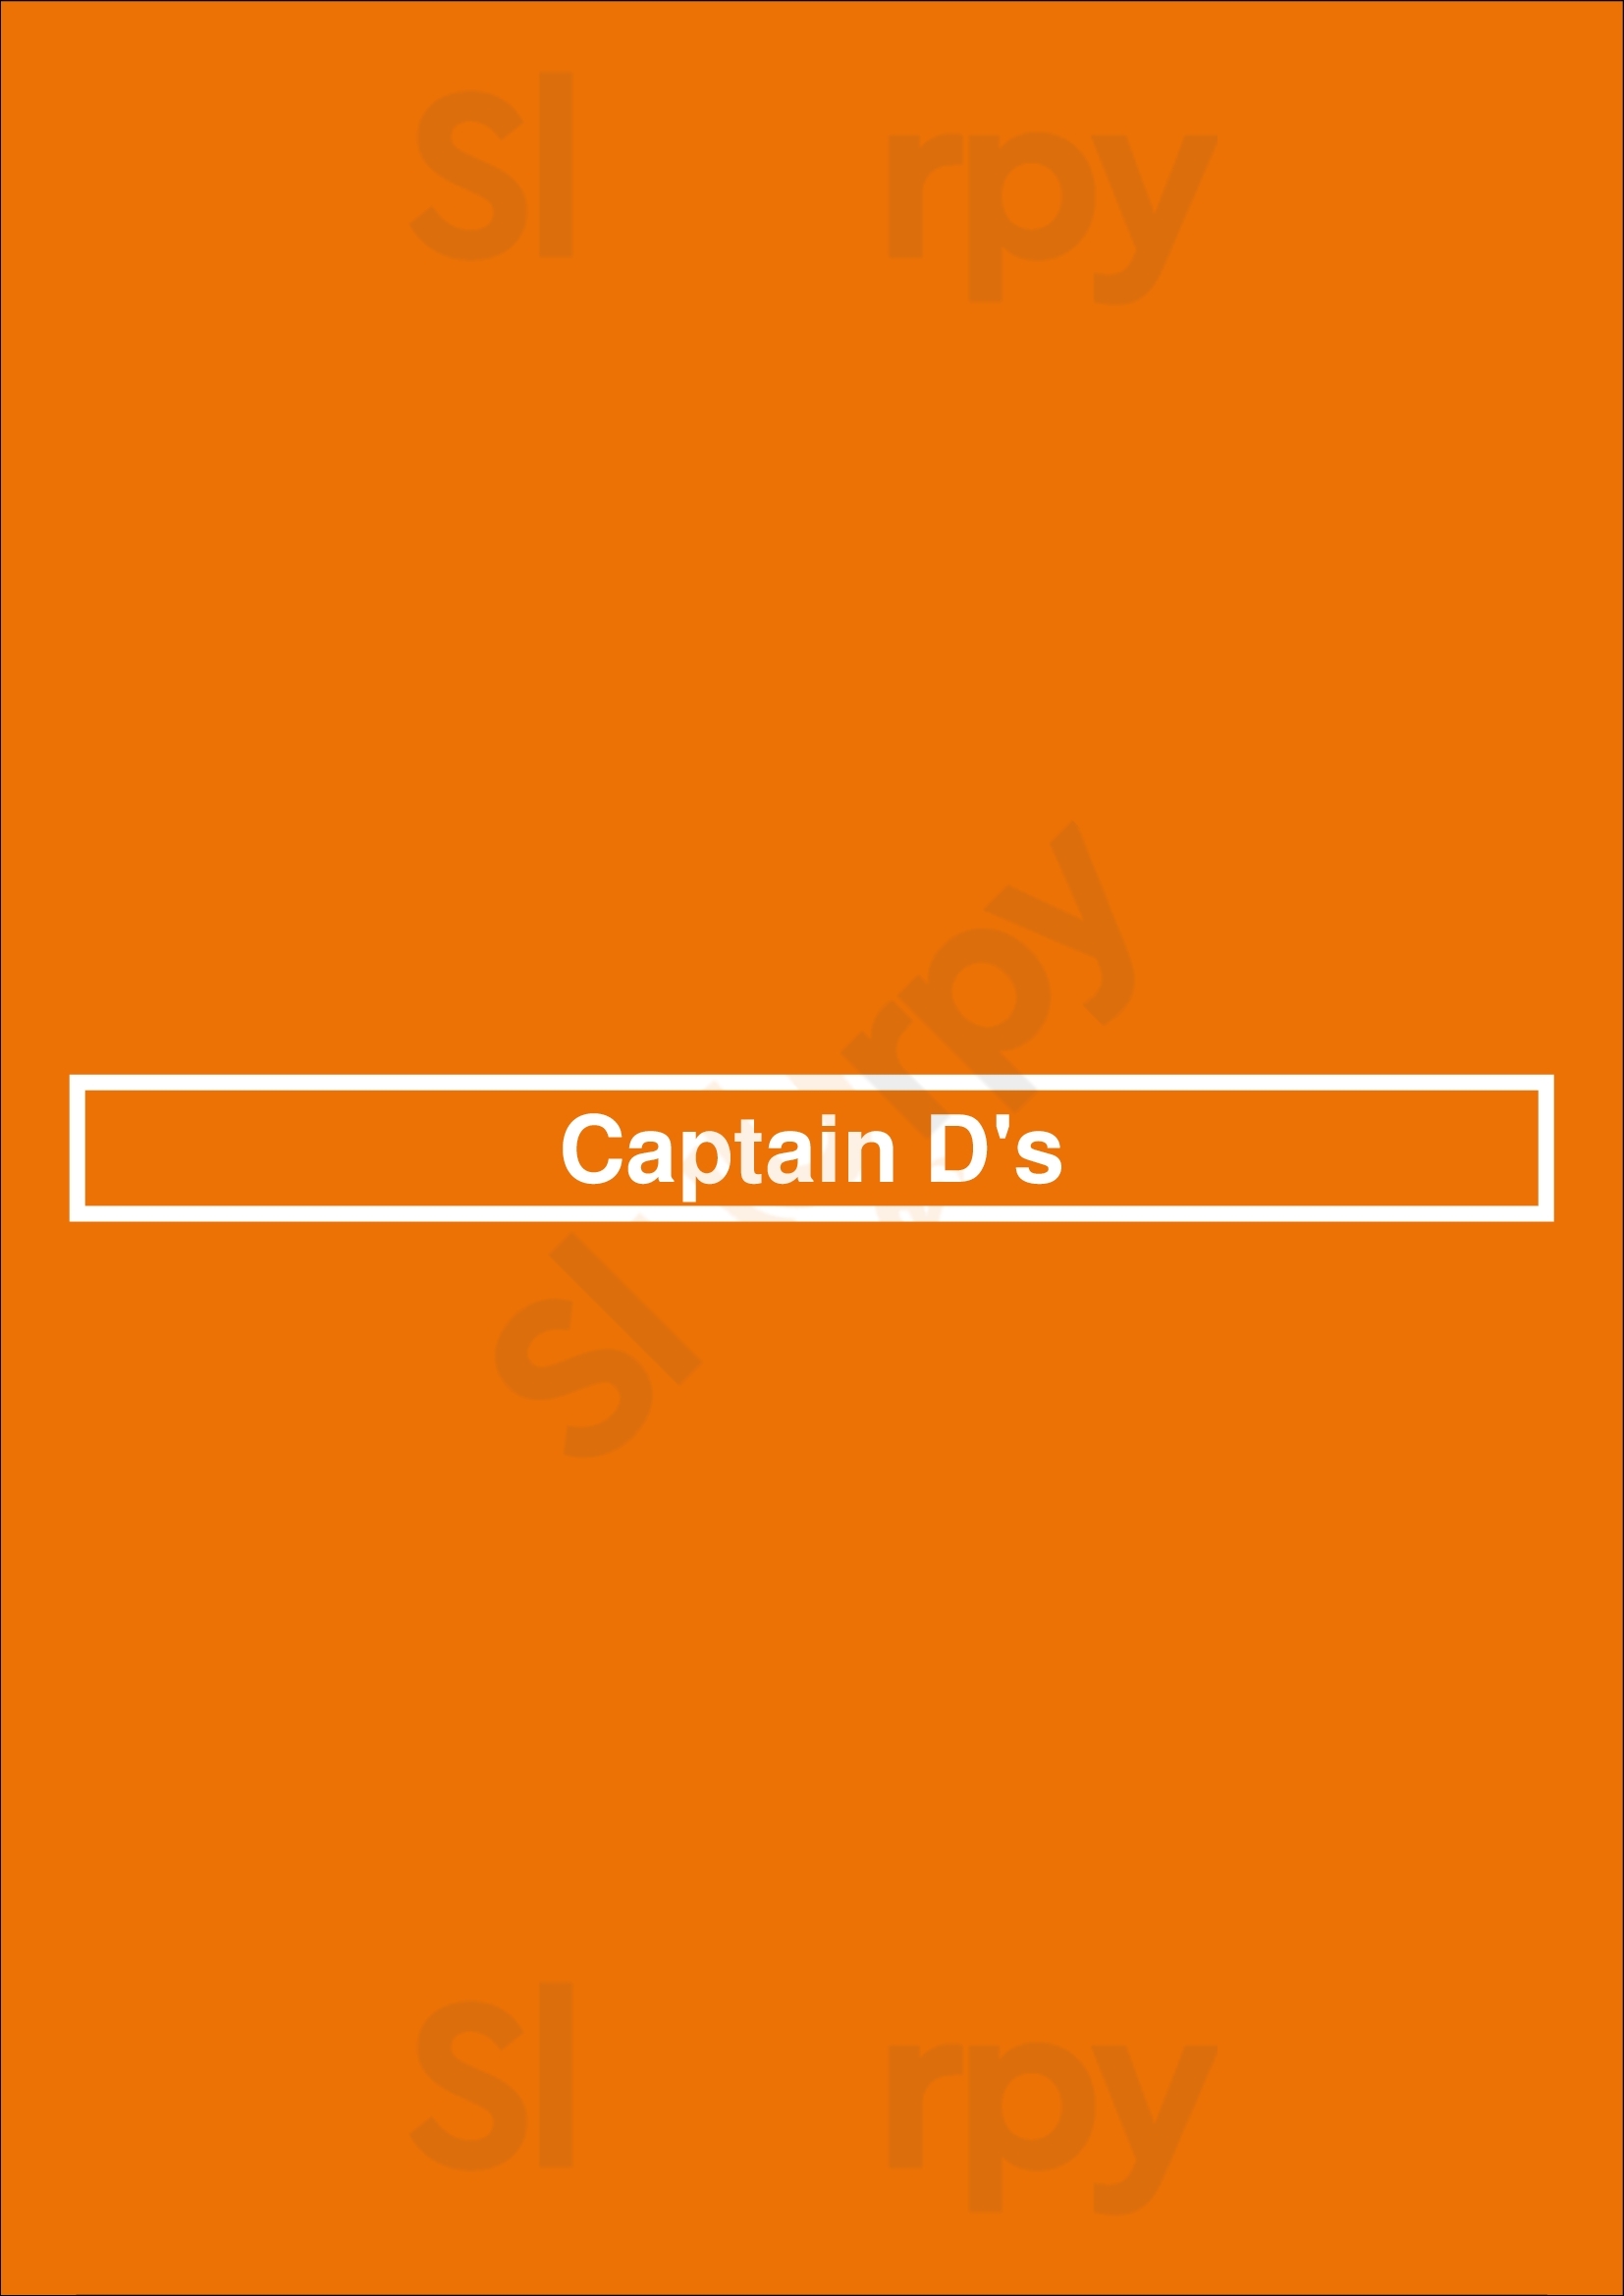 Captain D's Richmond Menu - 1